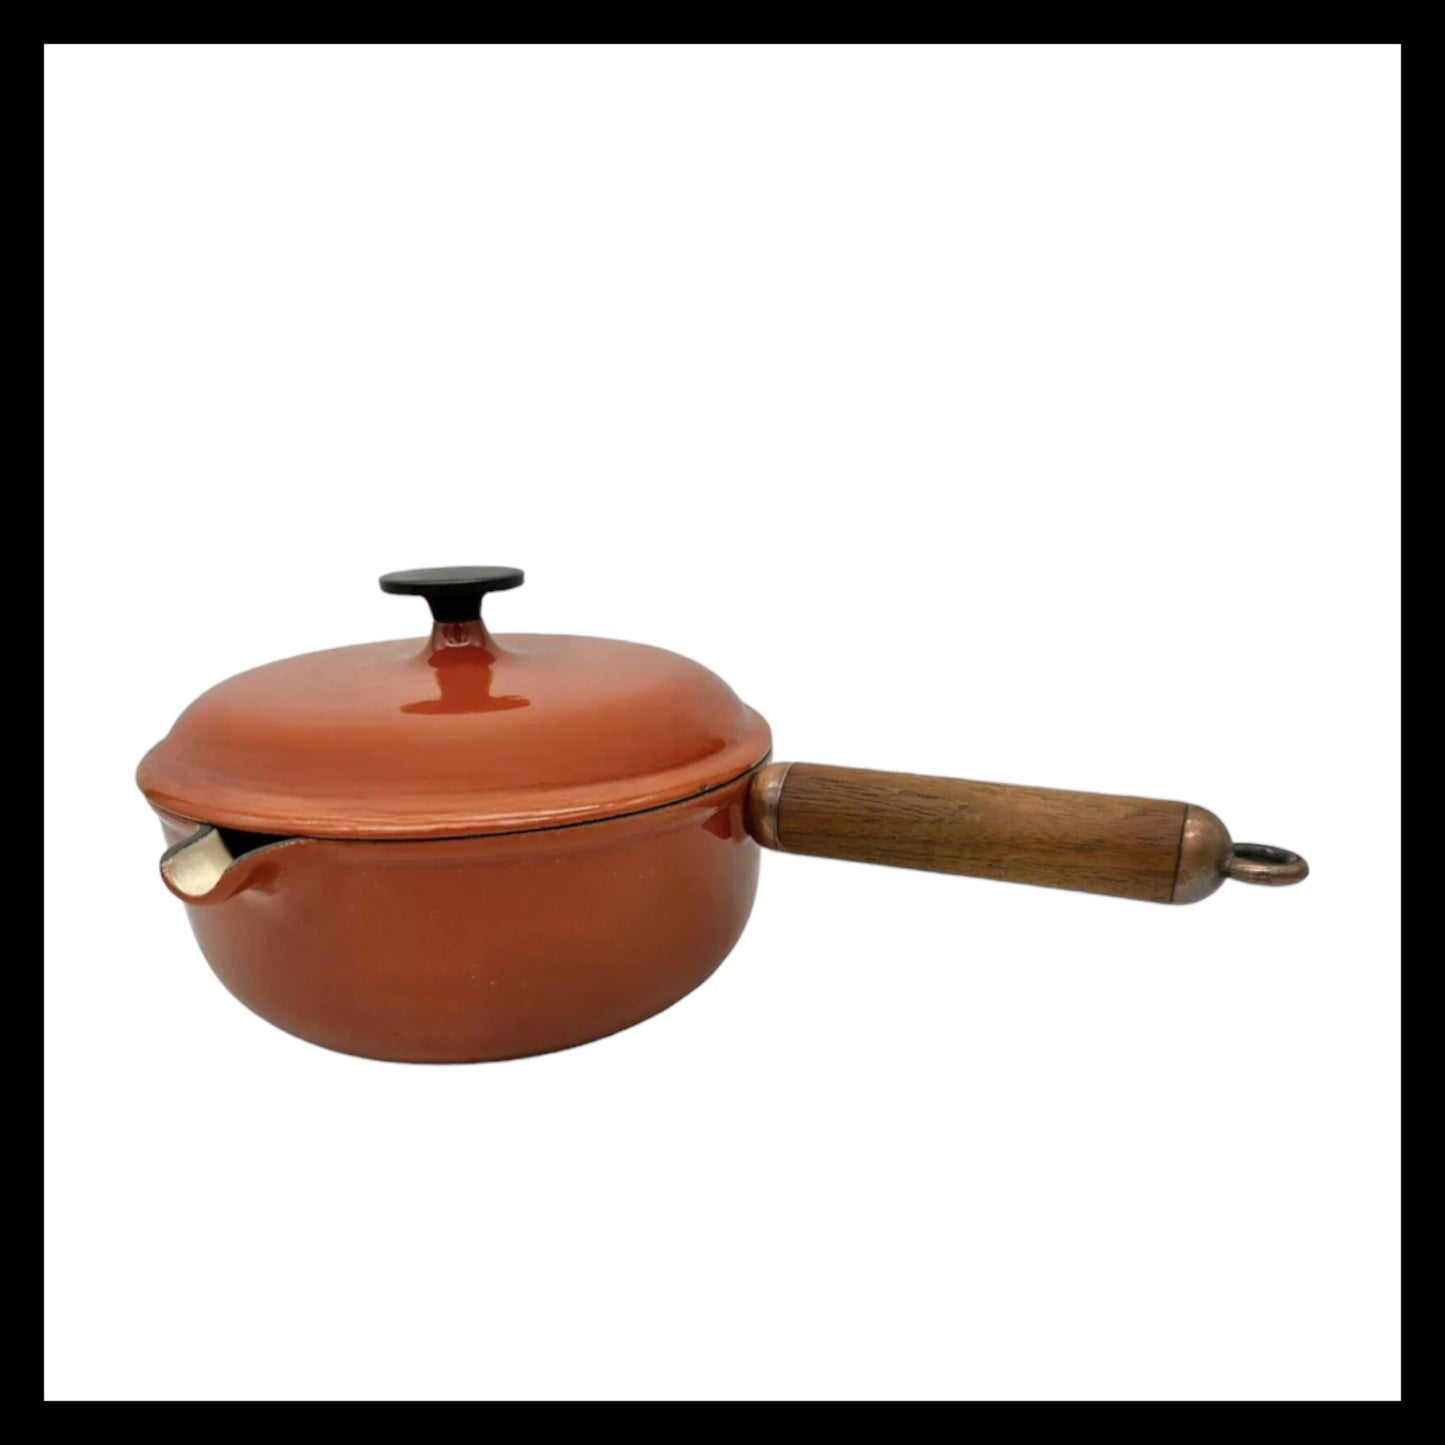 Vintage Le Creuset Pan, Le Creuset Saucepan with Lid, Cast Iron Pan Pot (B88)